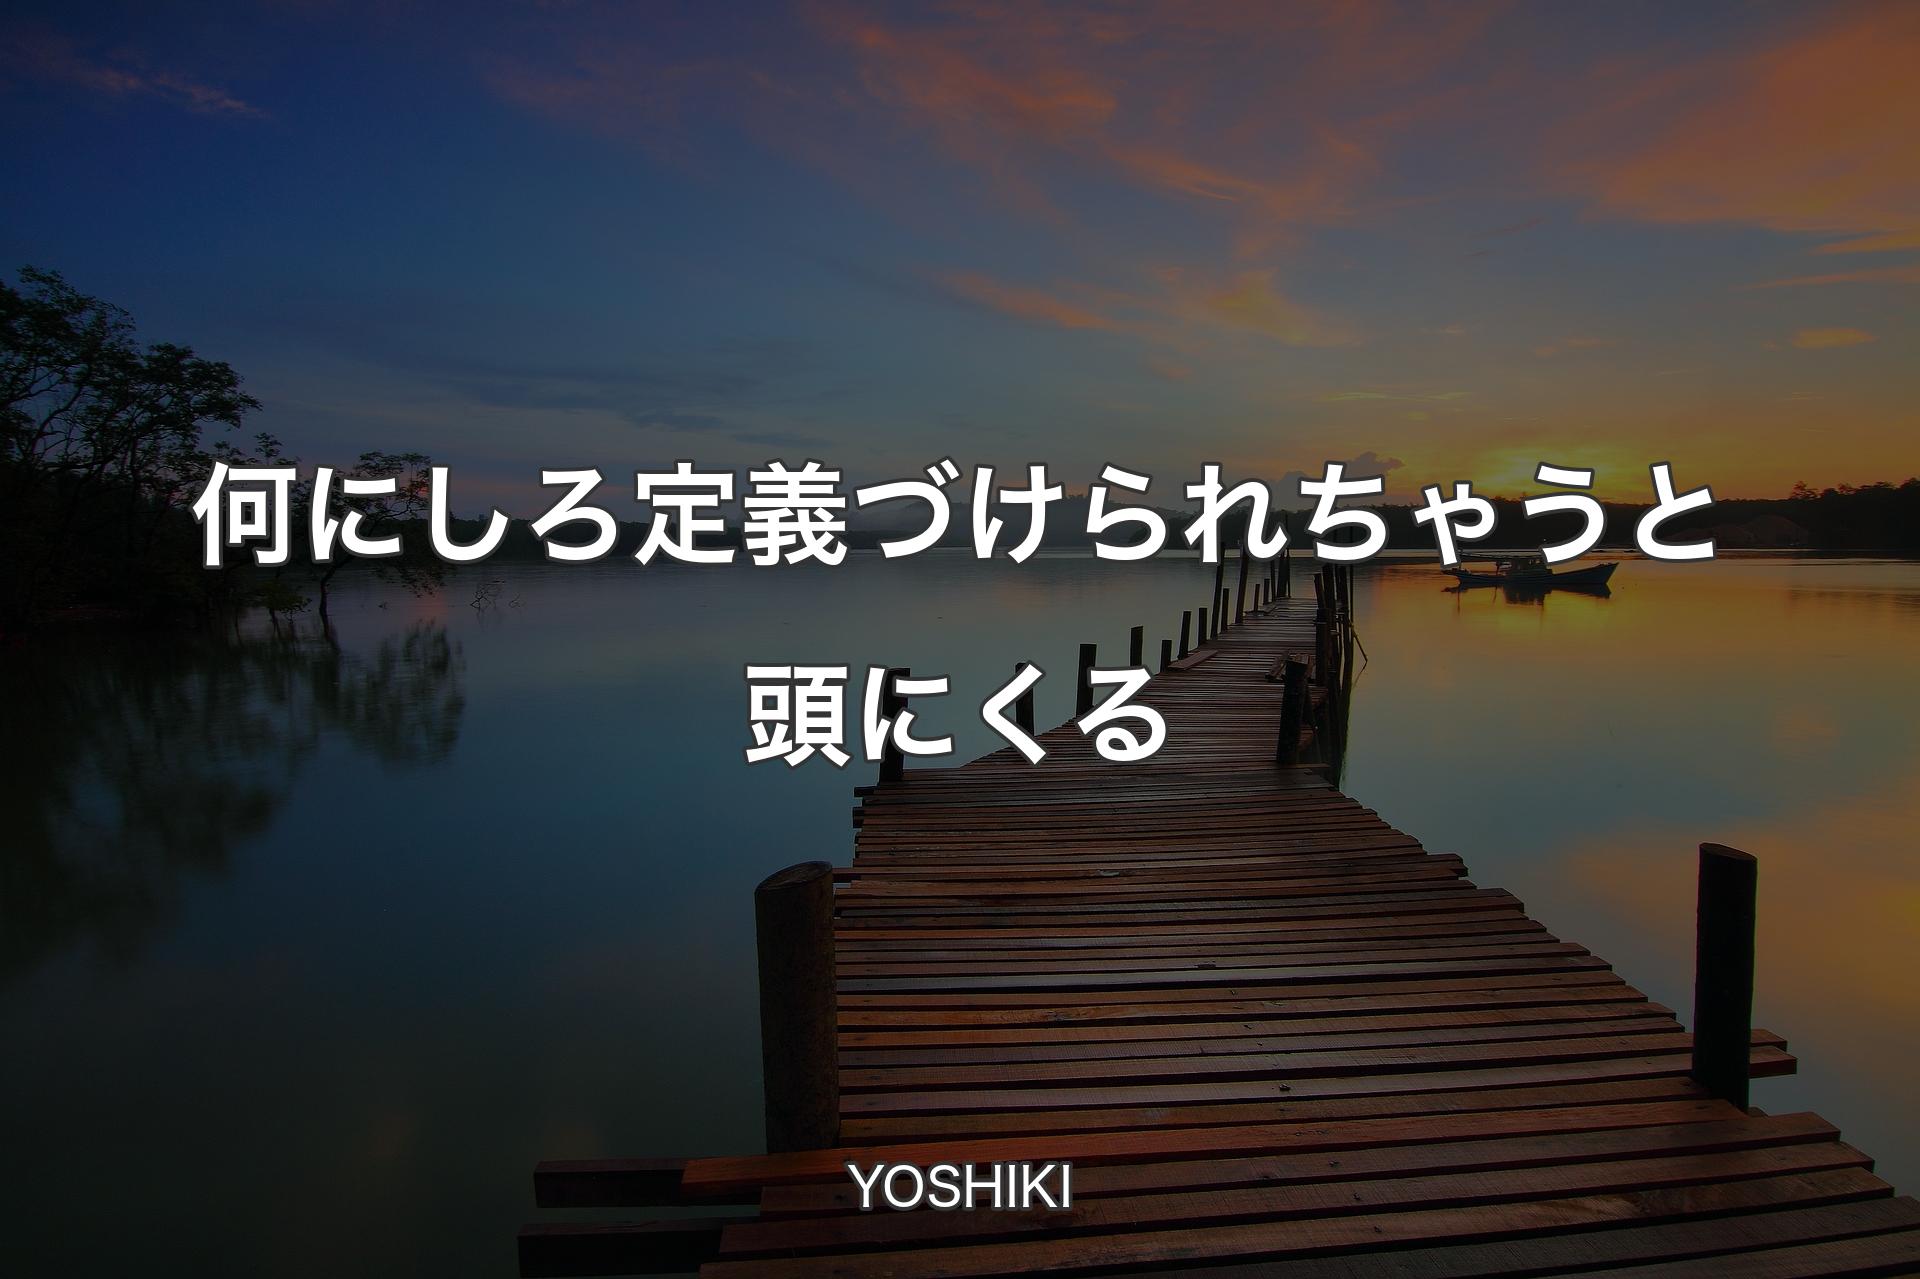 【背景3】何にしろ定義づけられちゃうと頭にくる - YOSHIKI